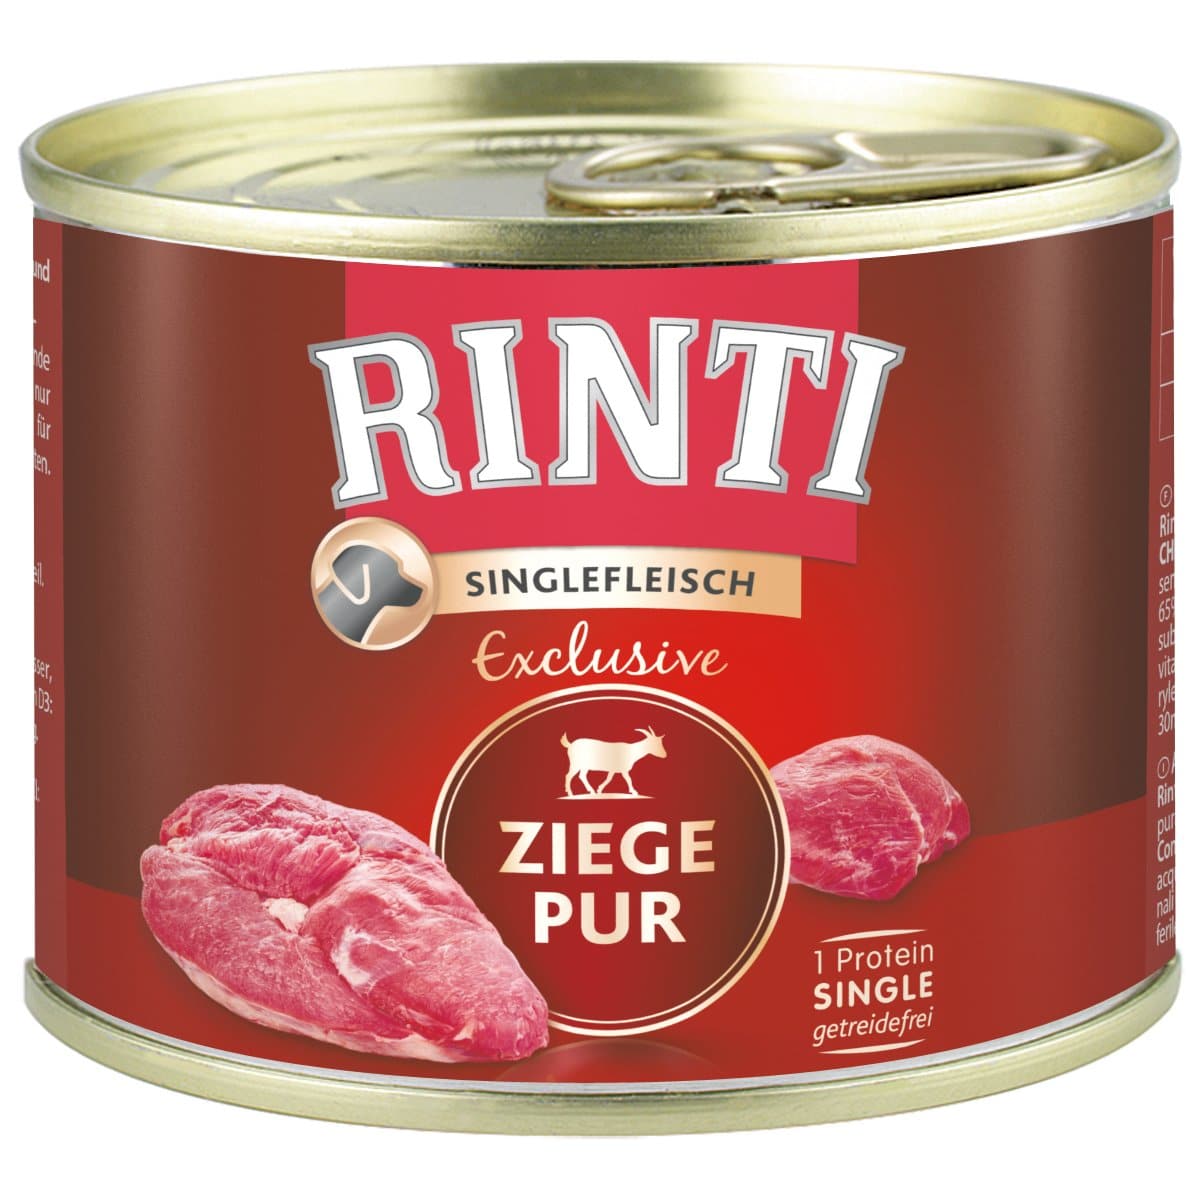 Rinti Singlefleisch Exclusive Ziege pur 24x185g